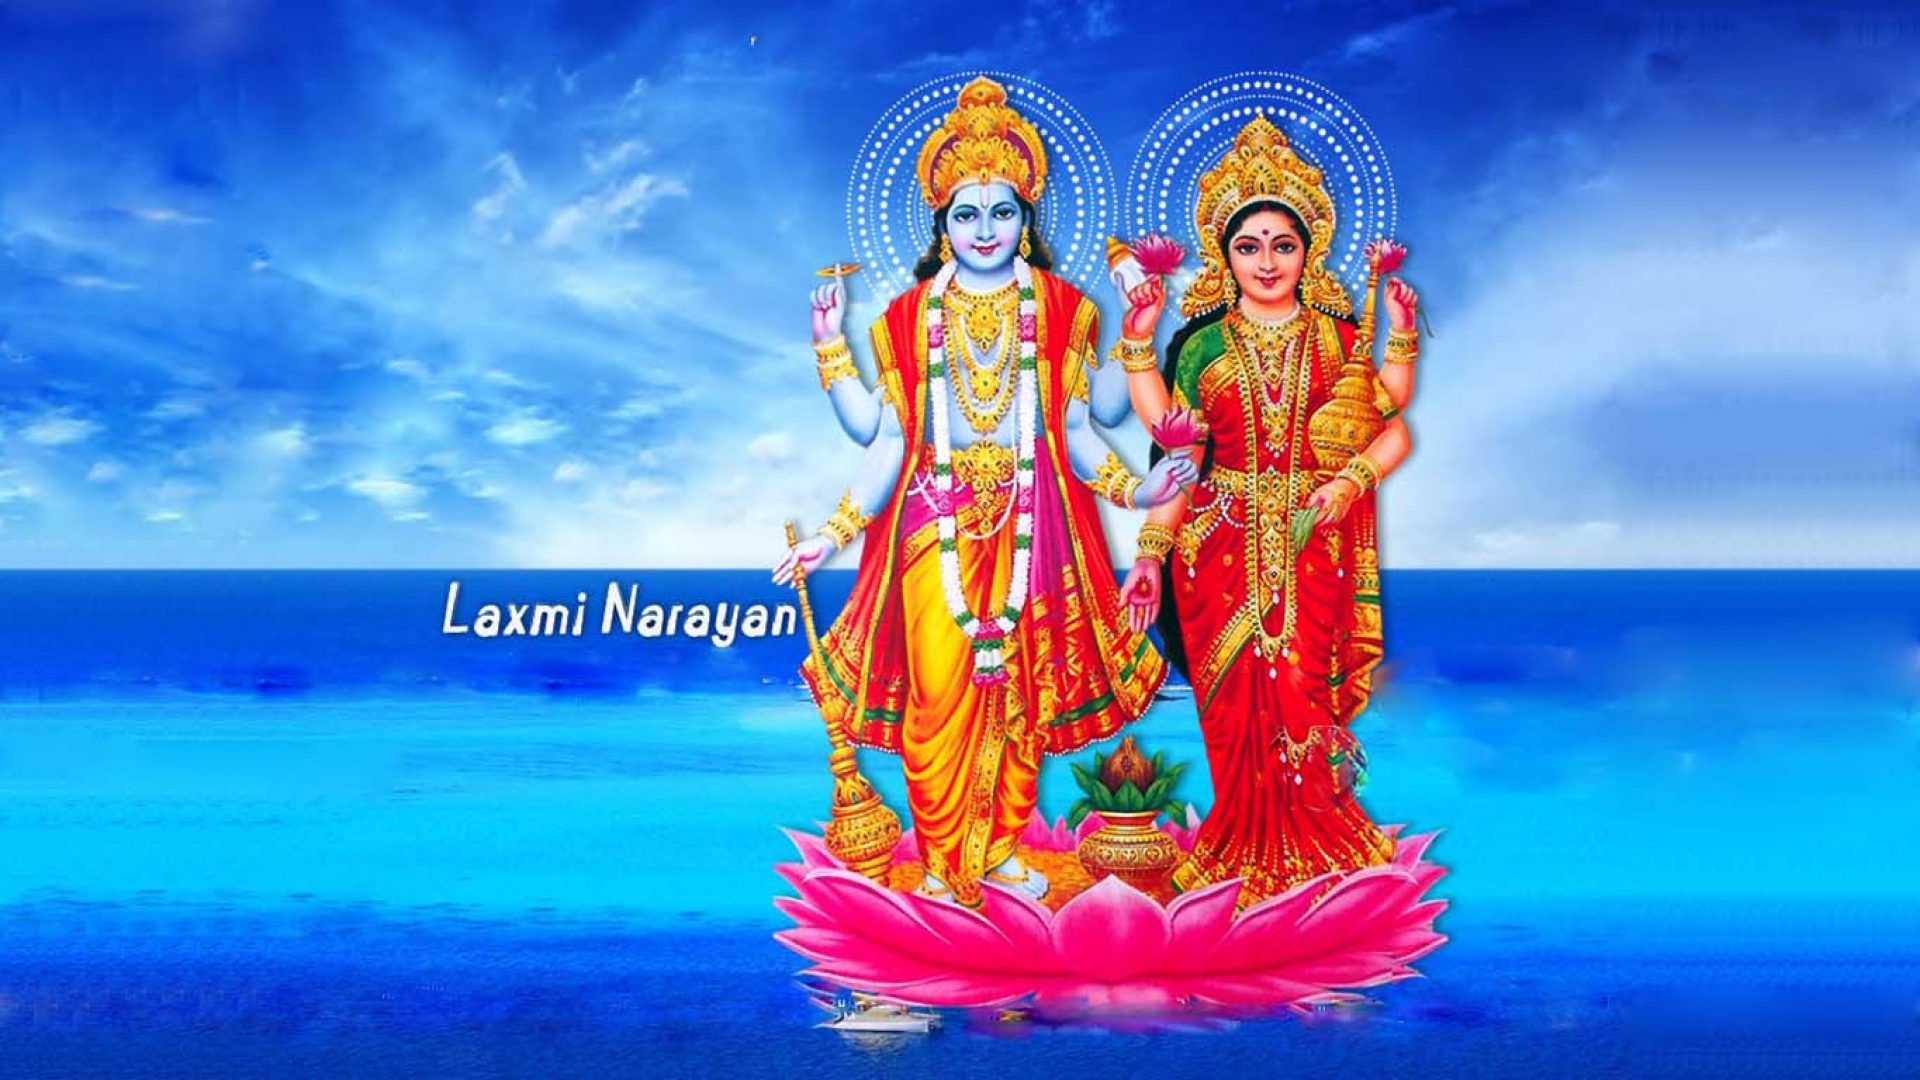 131+] Best Vishnu Lord Images | God Hindus